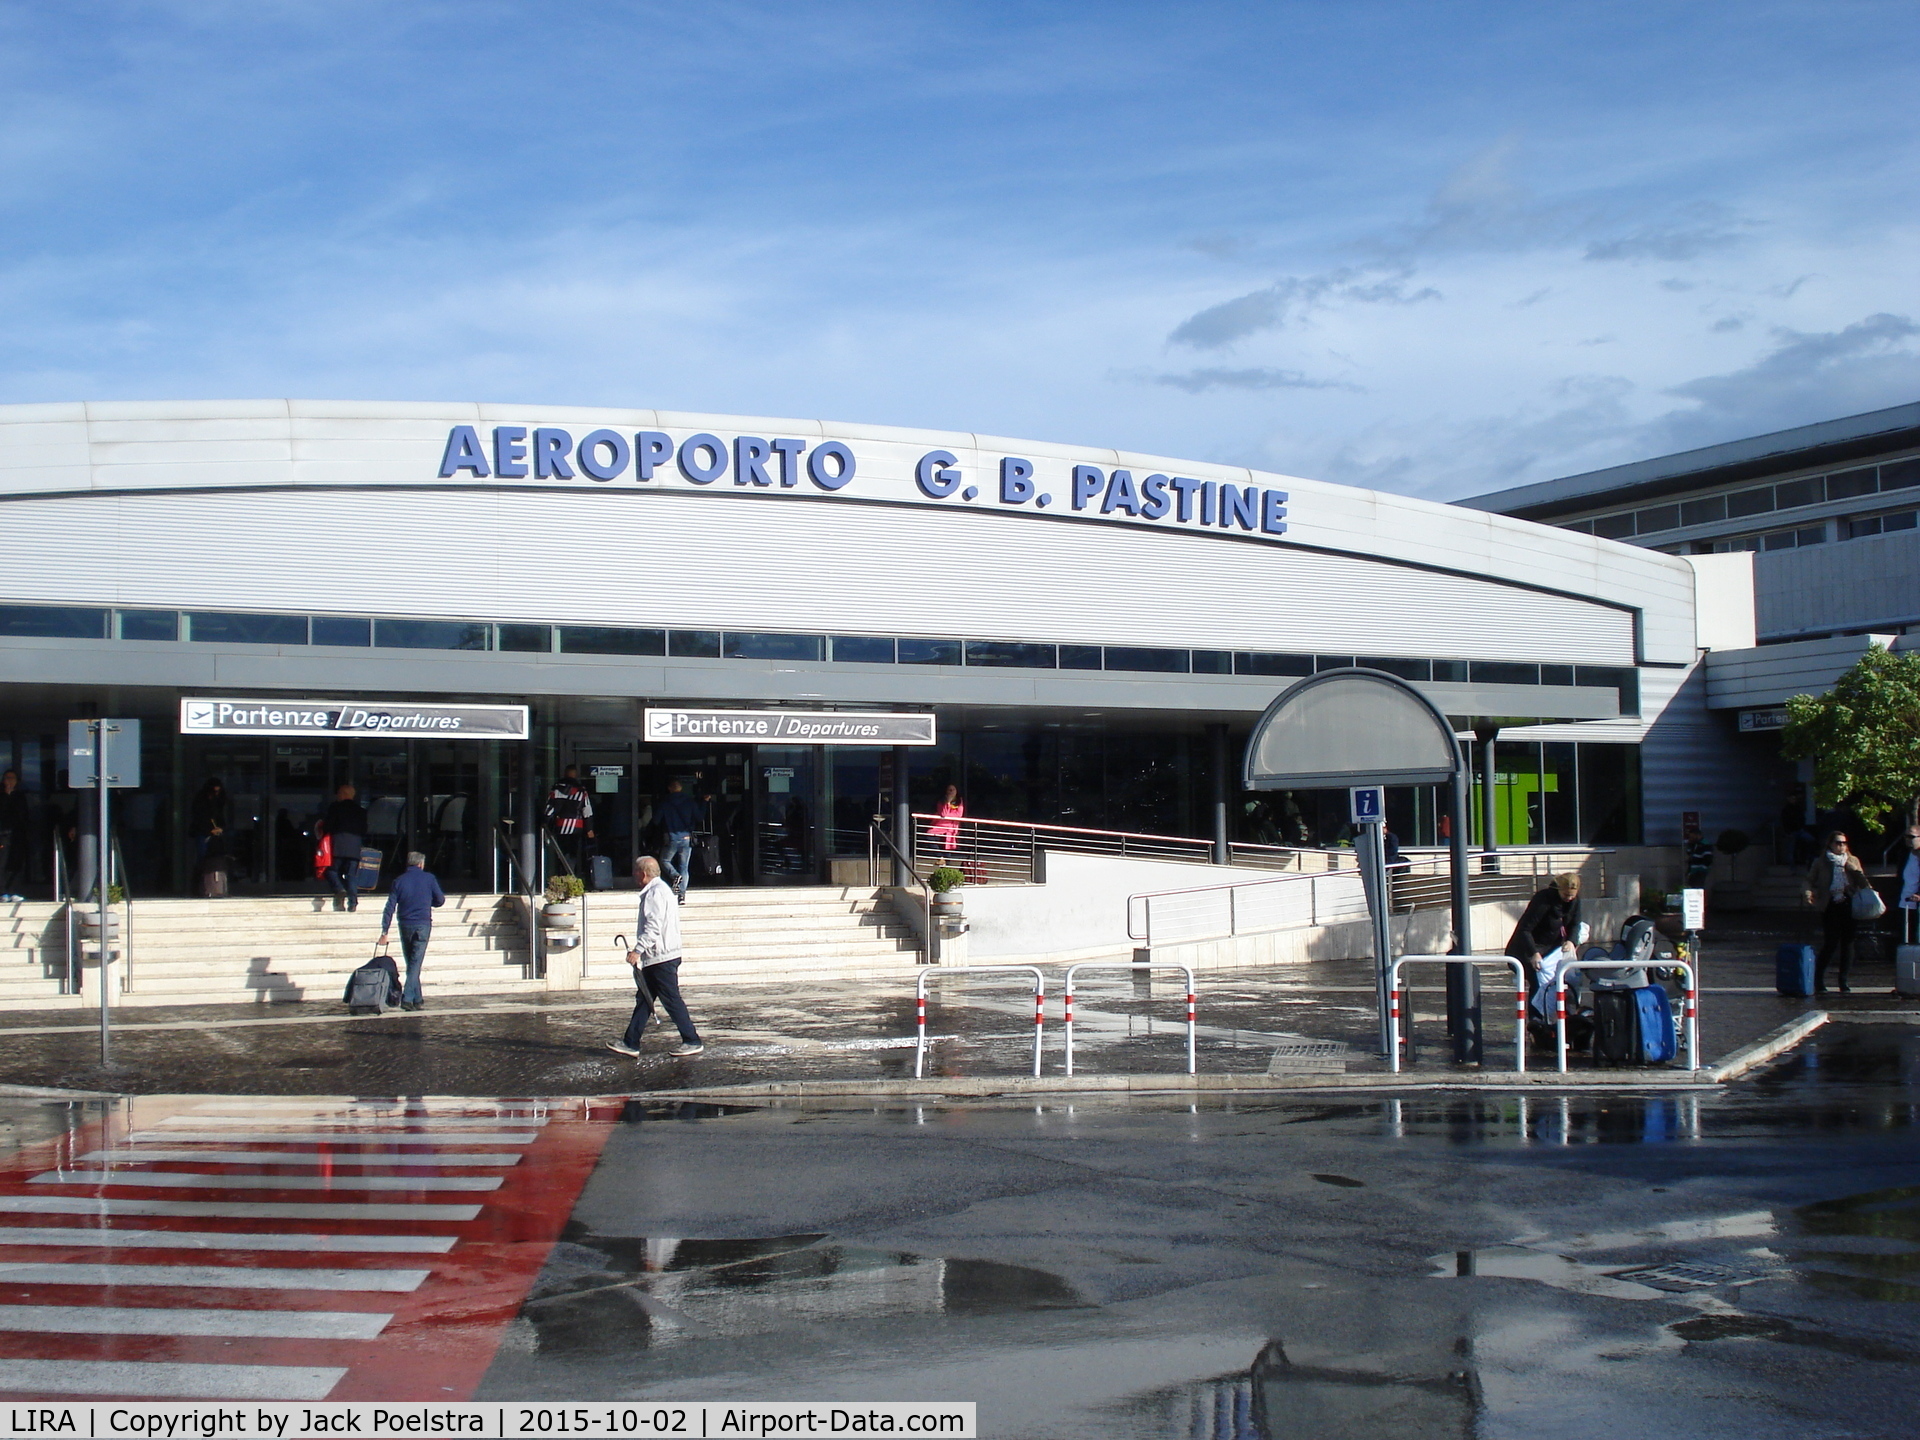 Ciampino Airport (Giovan Battista Pastine Airport), Rome Italy (LIRA) - Departure terminal of CIA